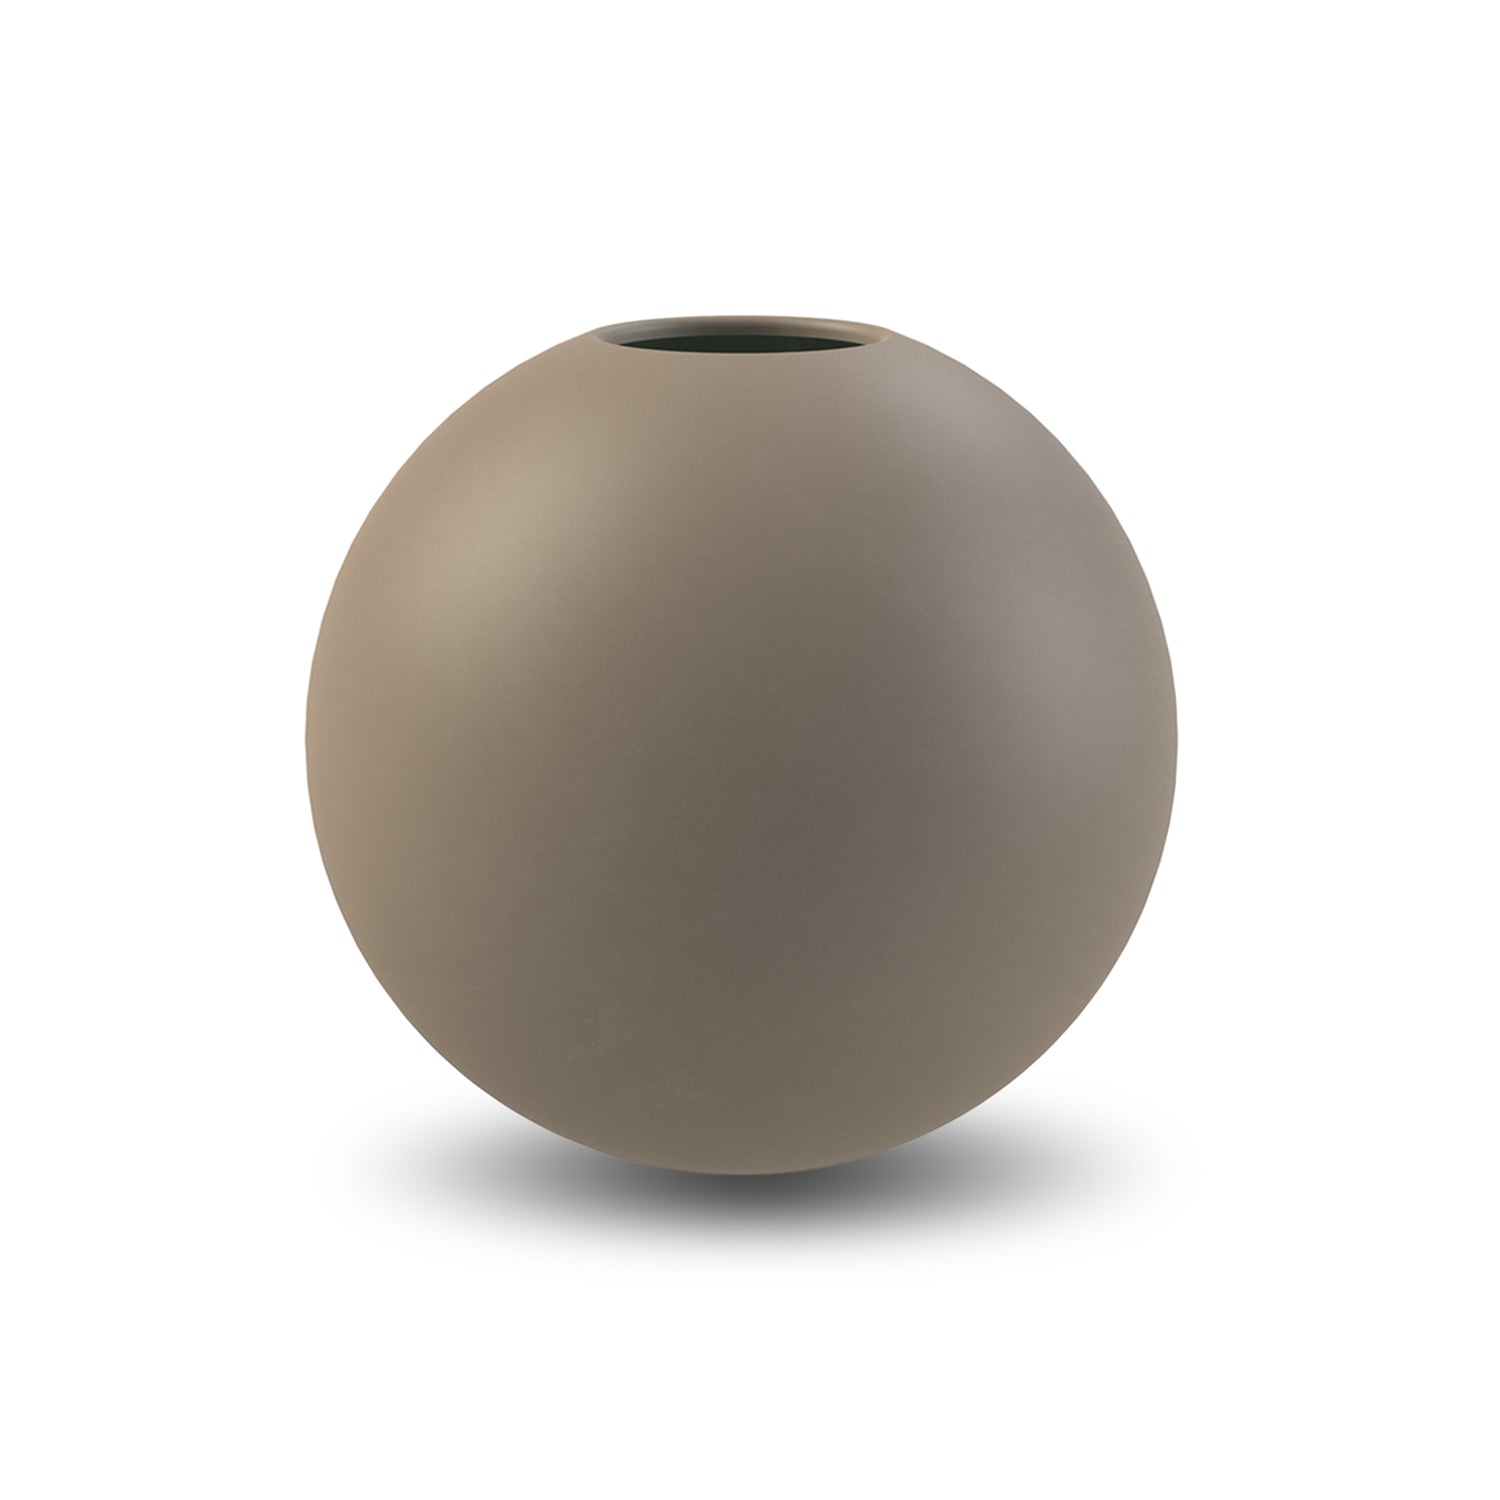 Billede af Cooee Design Ball vase Mud, 20 cm